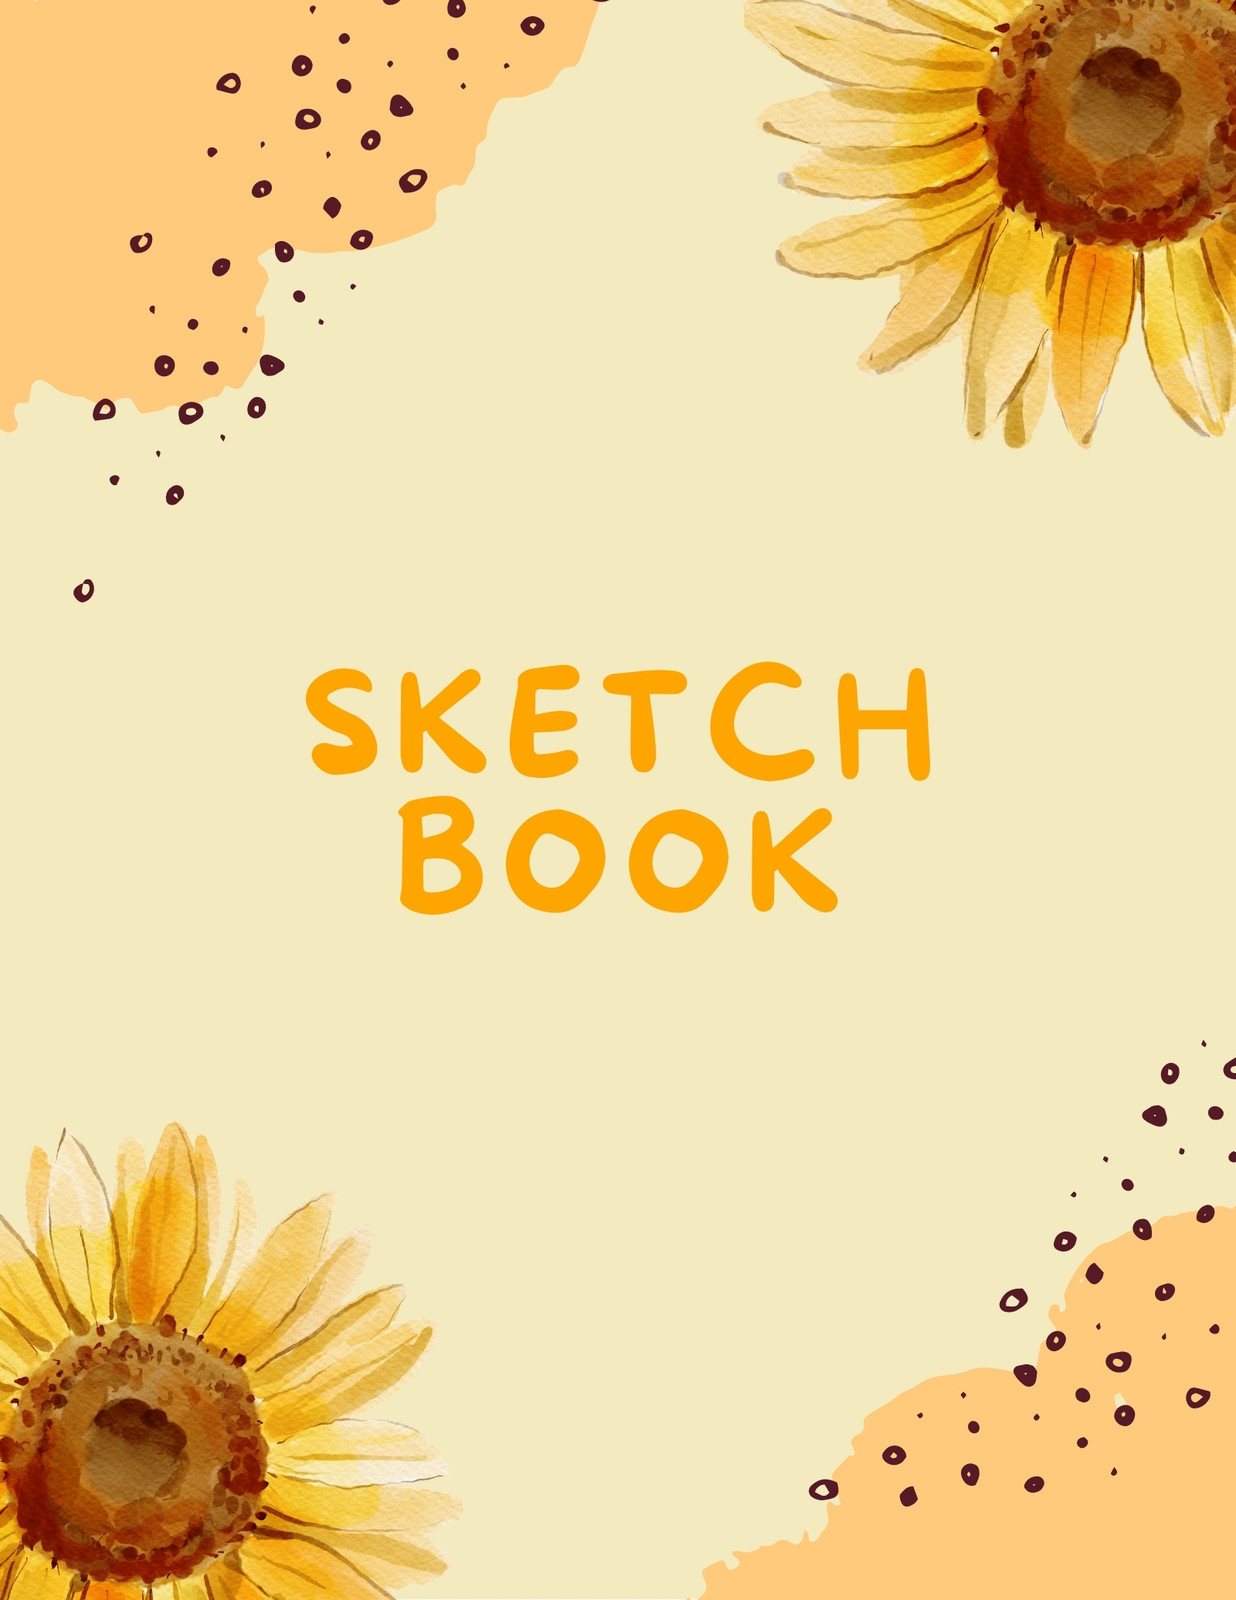 Sketchbook cover in color  Sketch book, Sketchbook cover, Art journal  inspiration